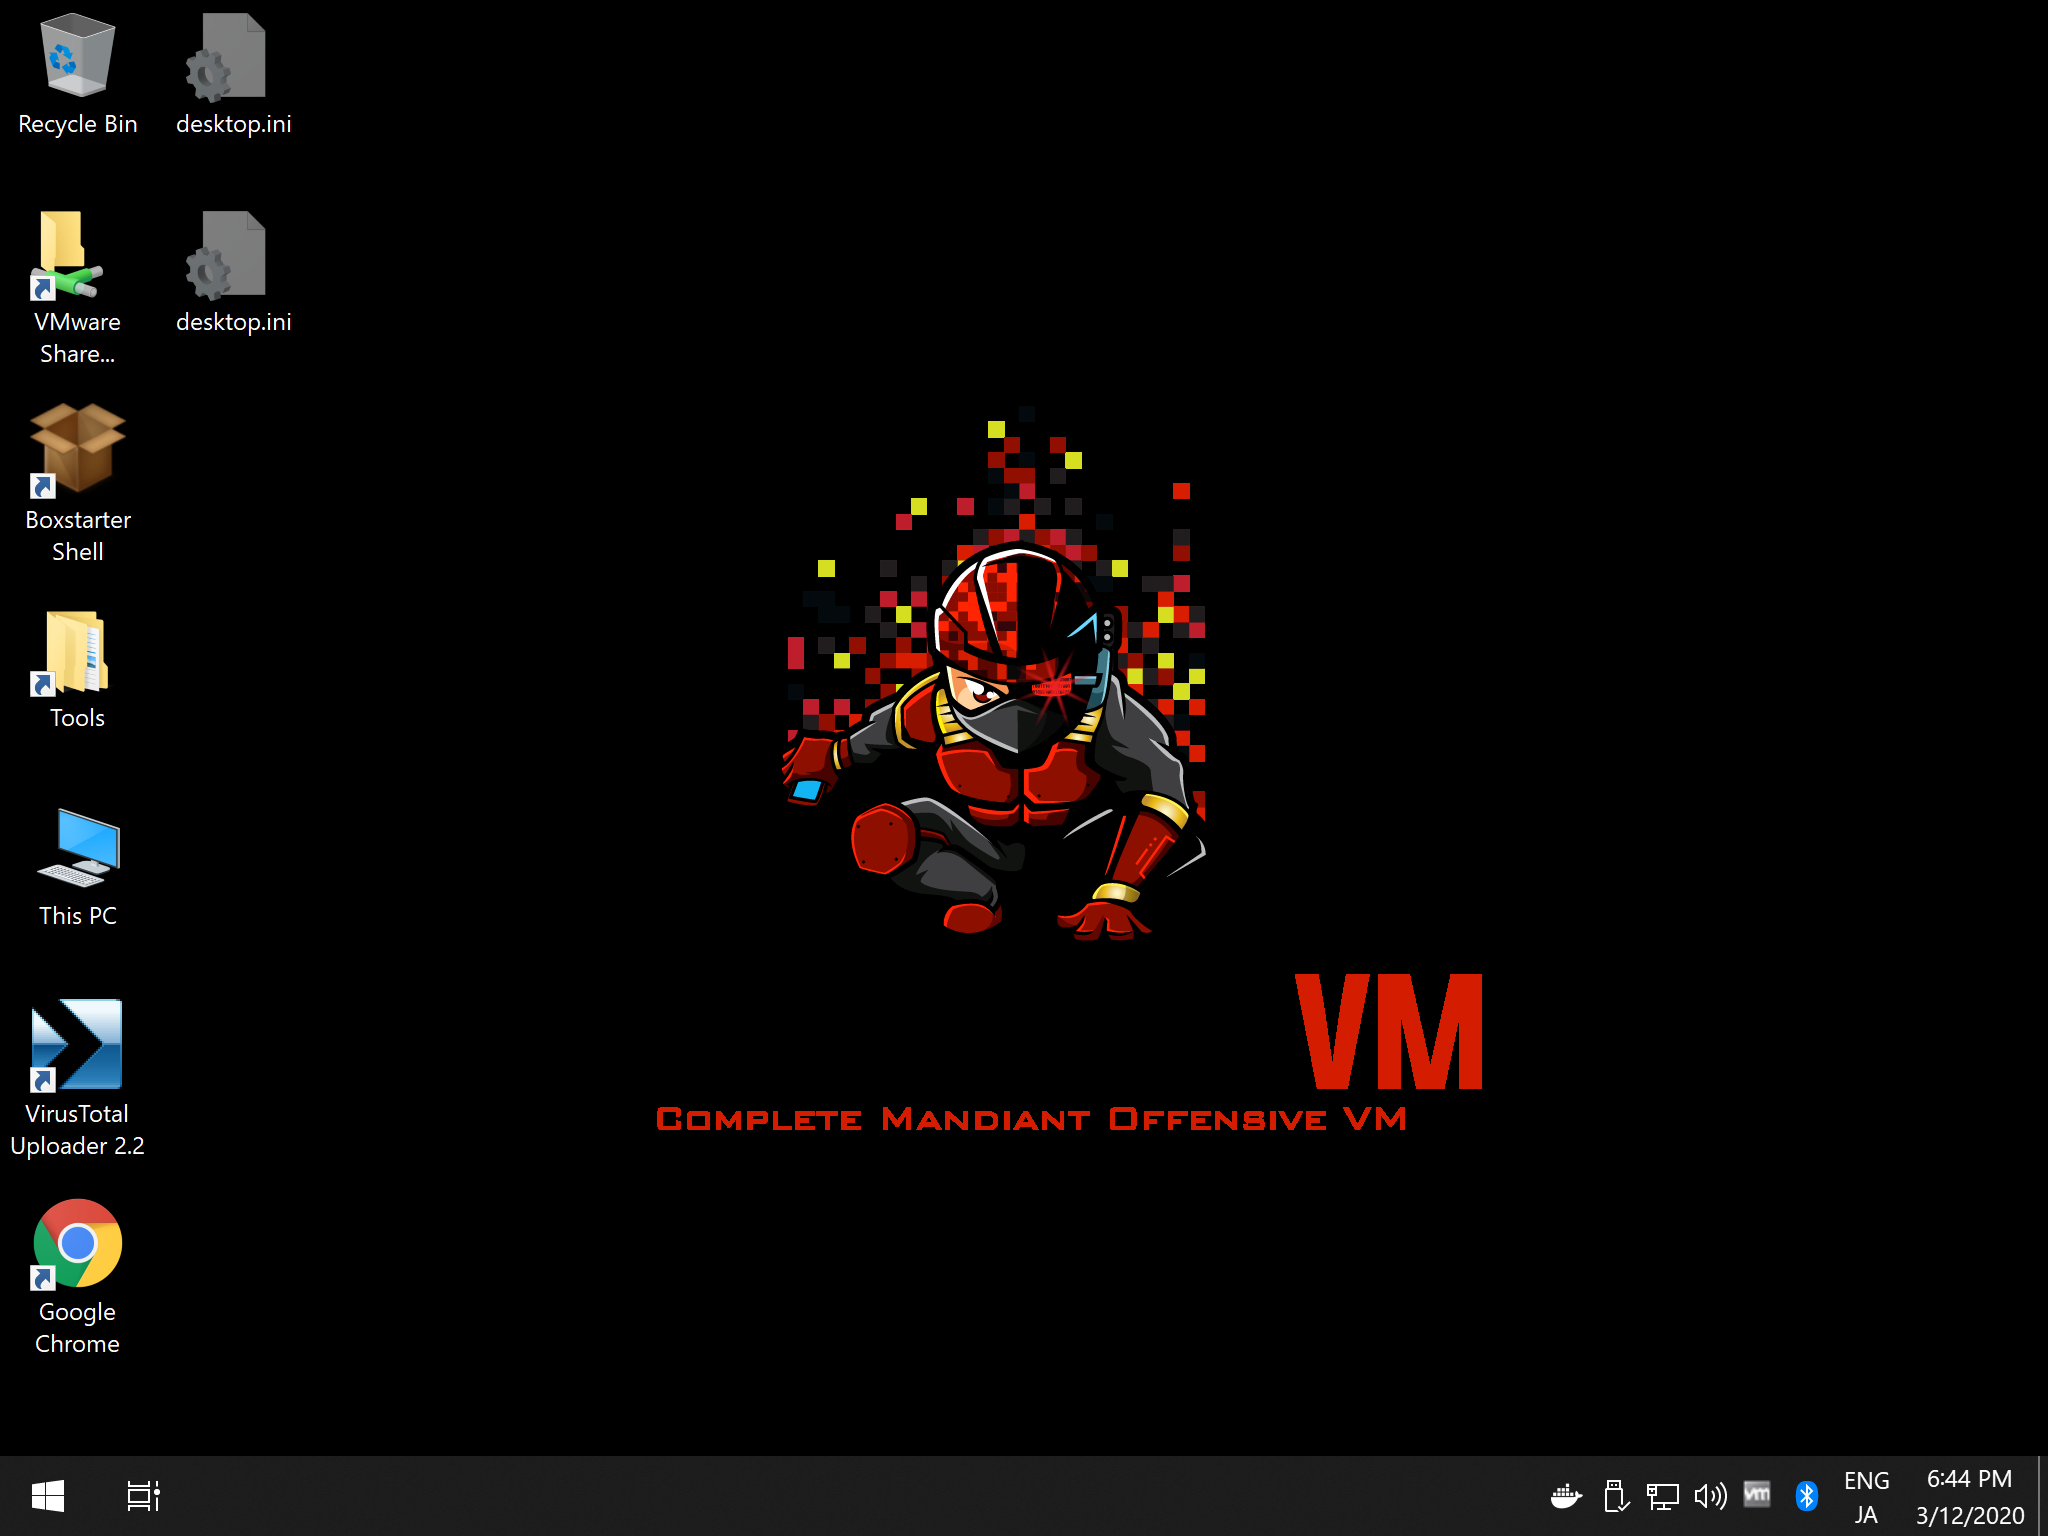 CommandoVM_Desktop.png